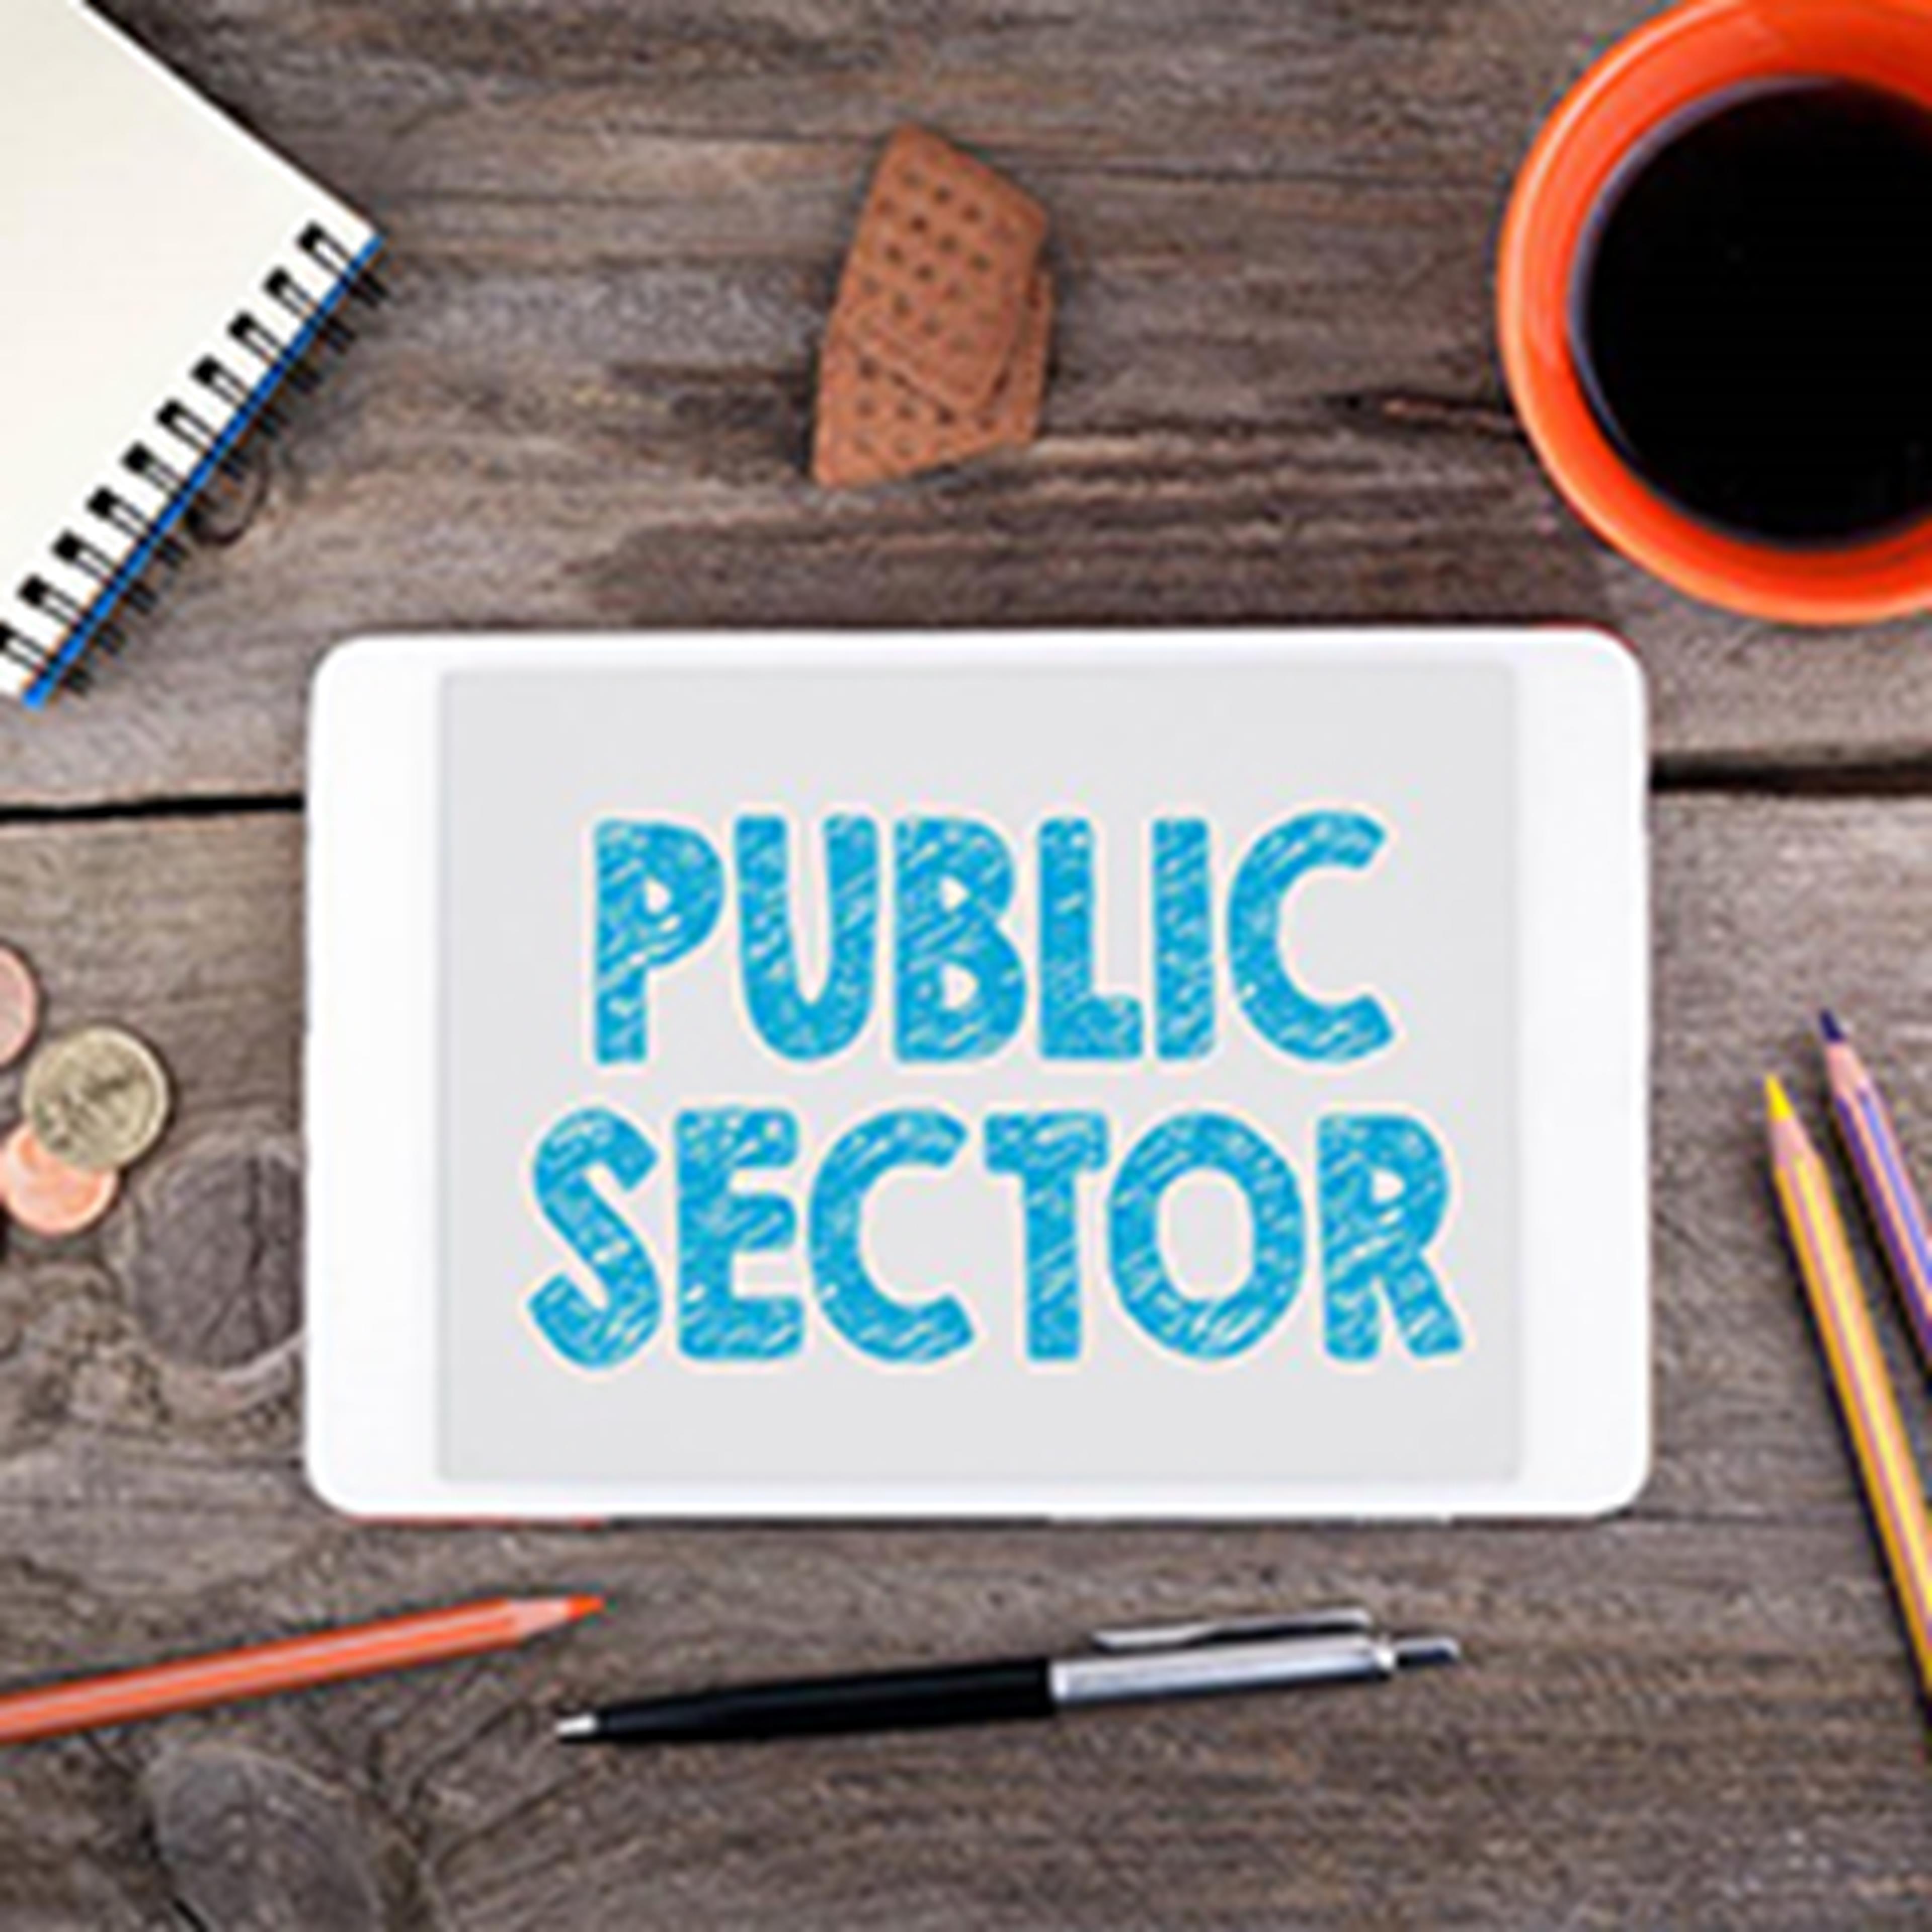 public sector written on tablet